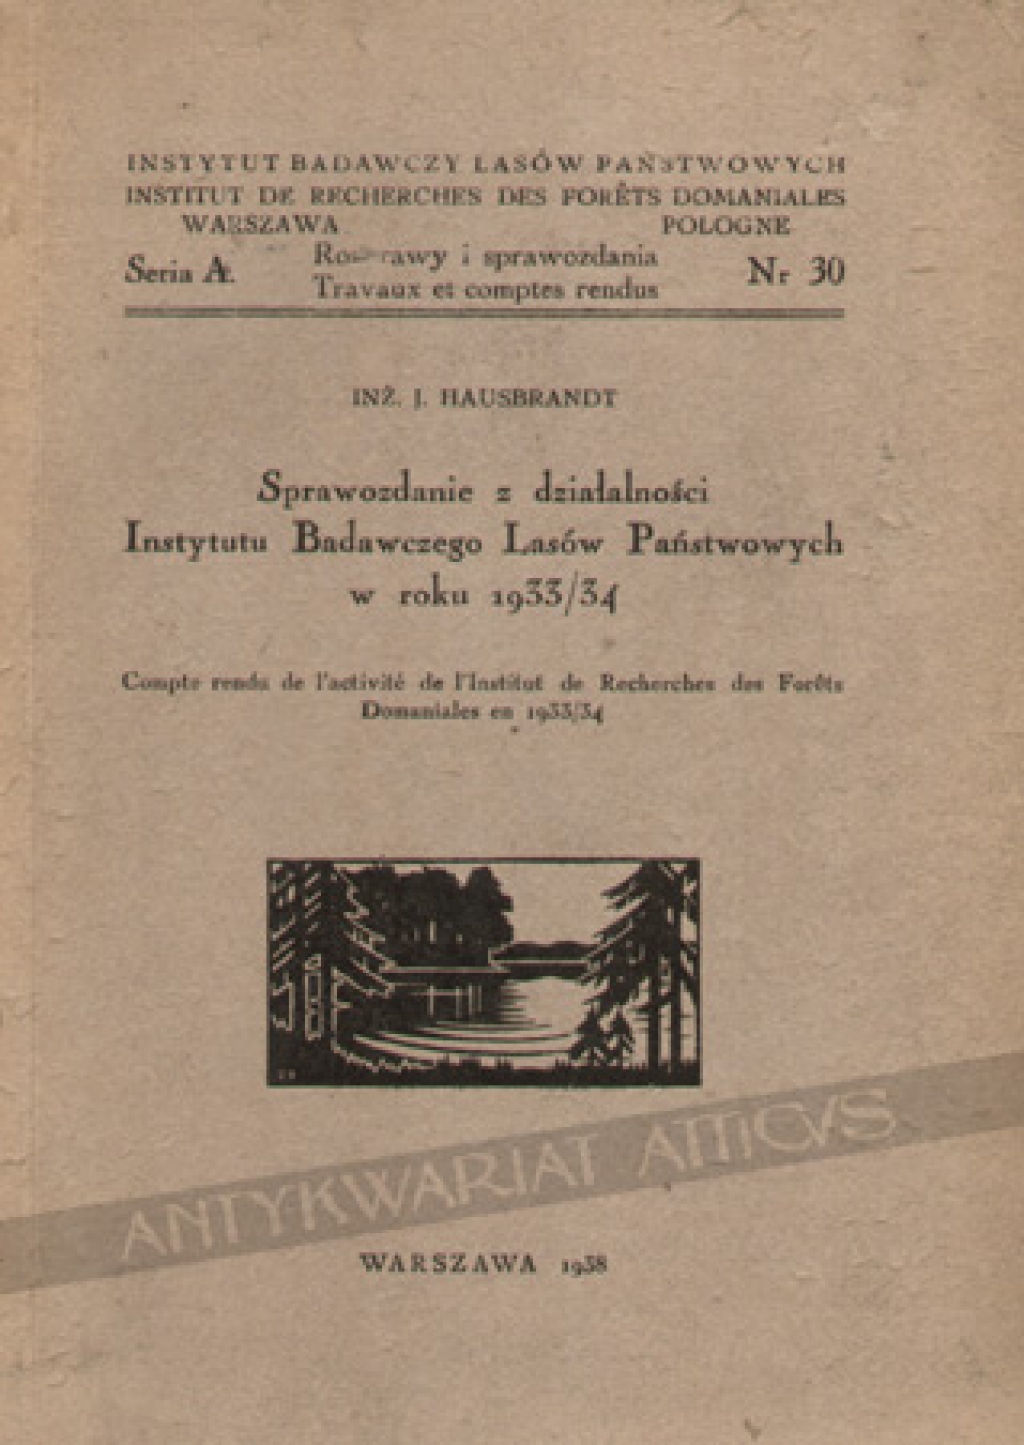 Sprawozdanie z działalności Instytutu Badawczego Lasów Państwowych w roku 1933/34